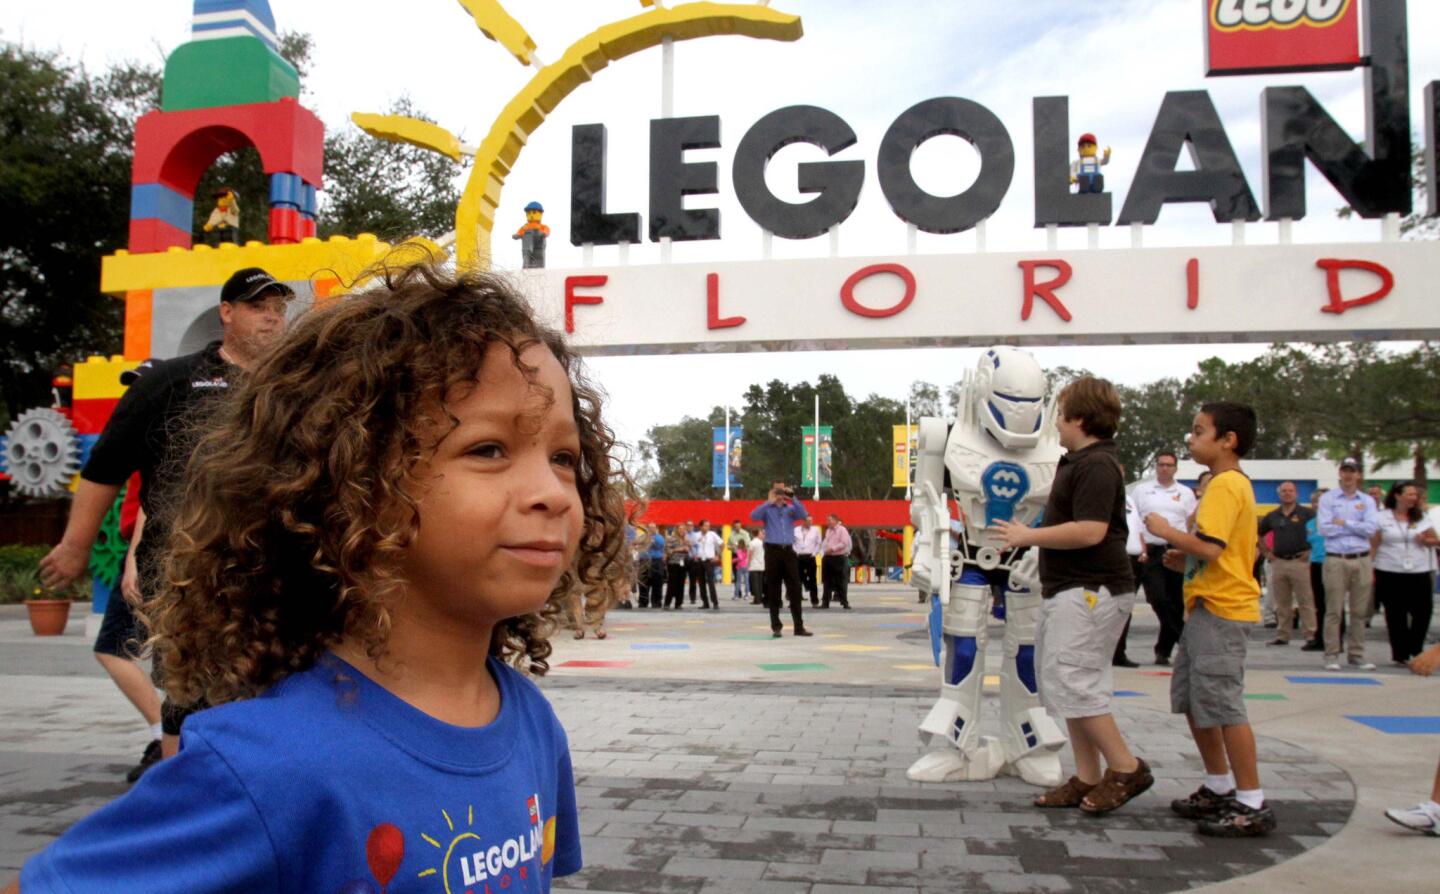 Legoland Florida grand opening ceremony